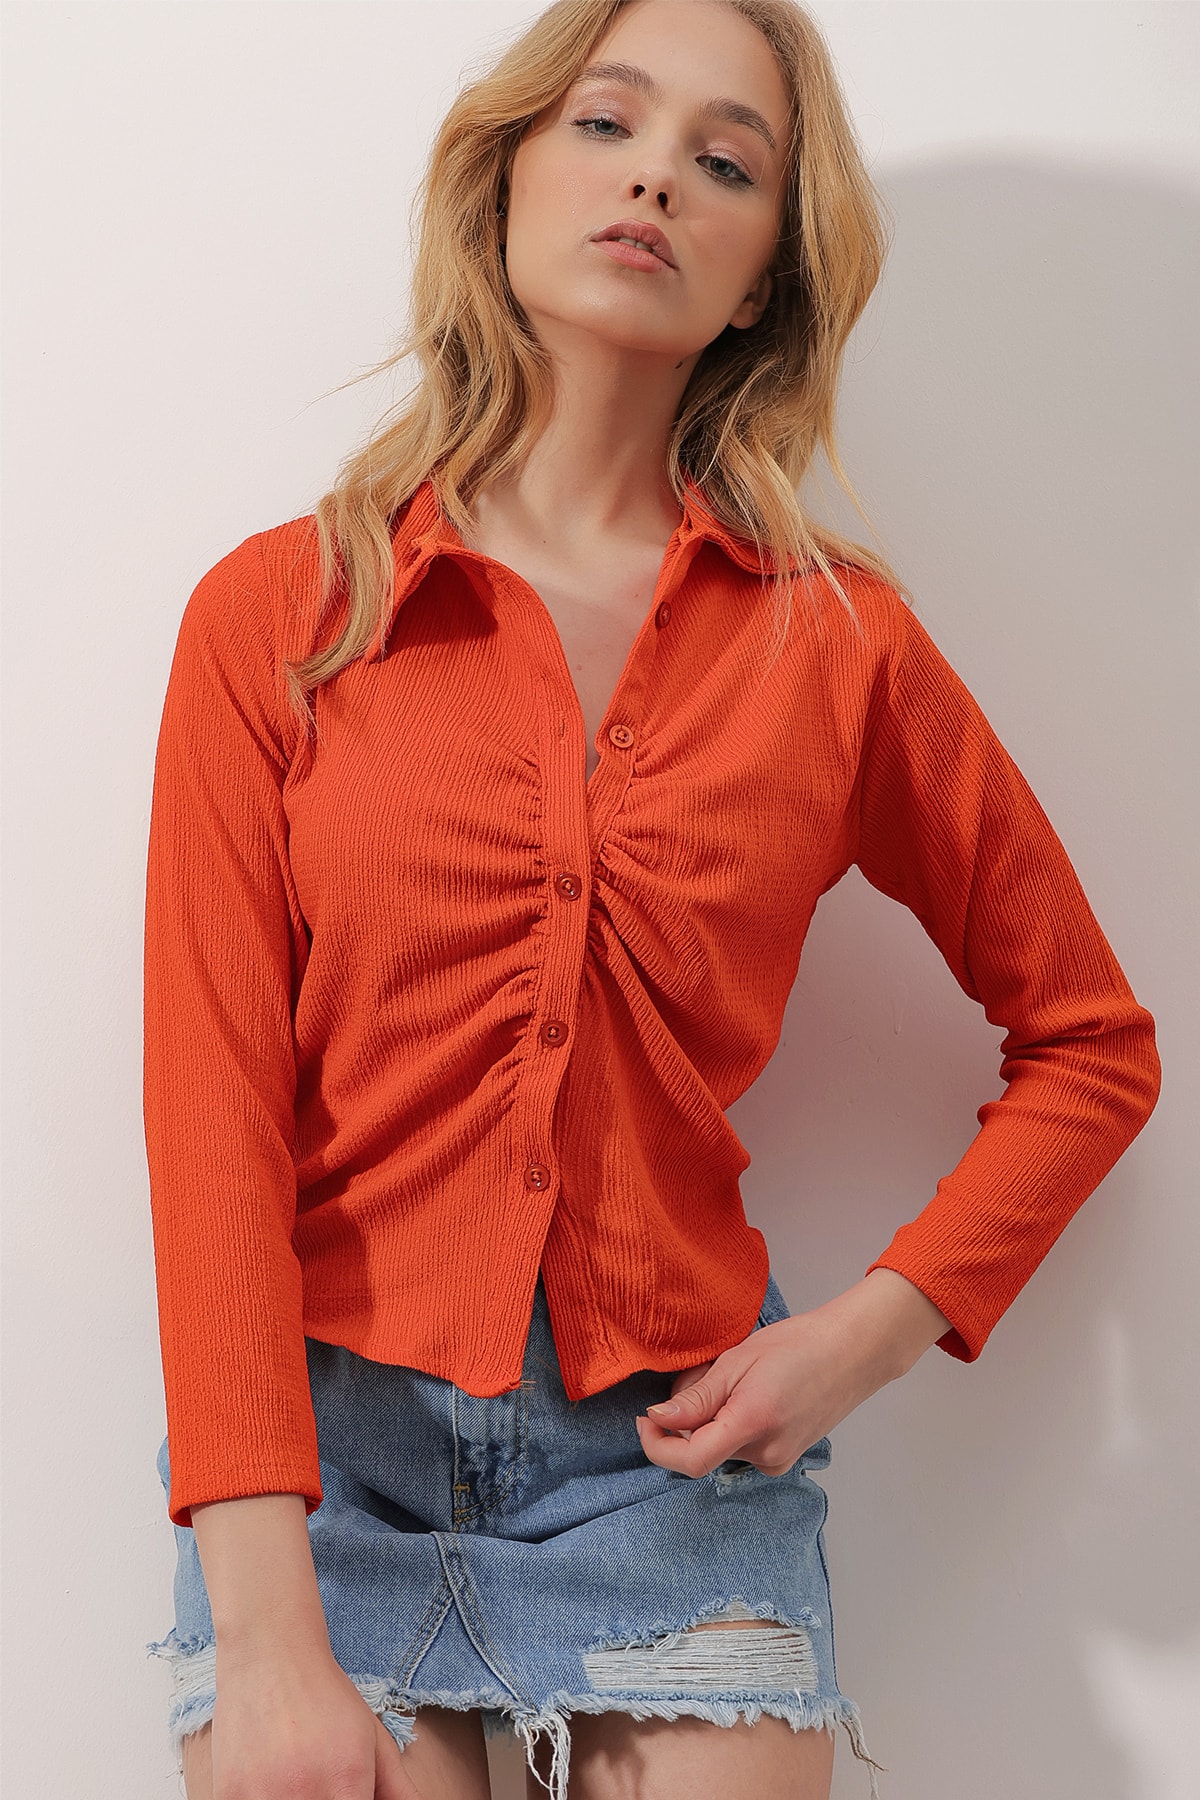 Рубашка - Оранжевая - Приталенный крой Trend Alaçatı Stili, оранжевый